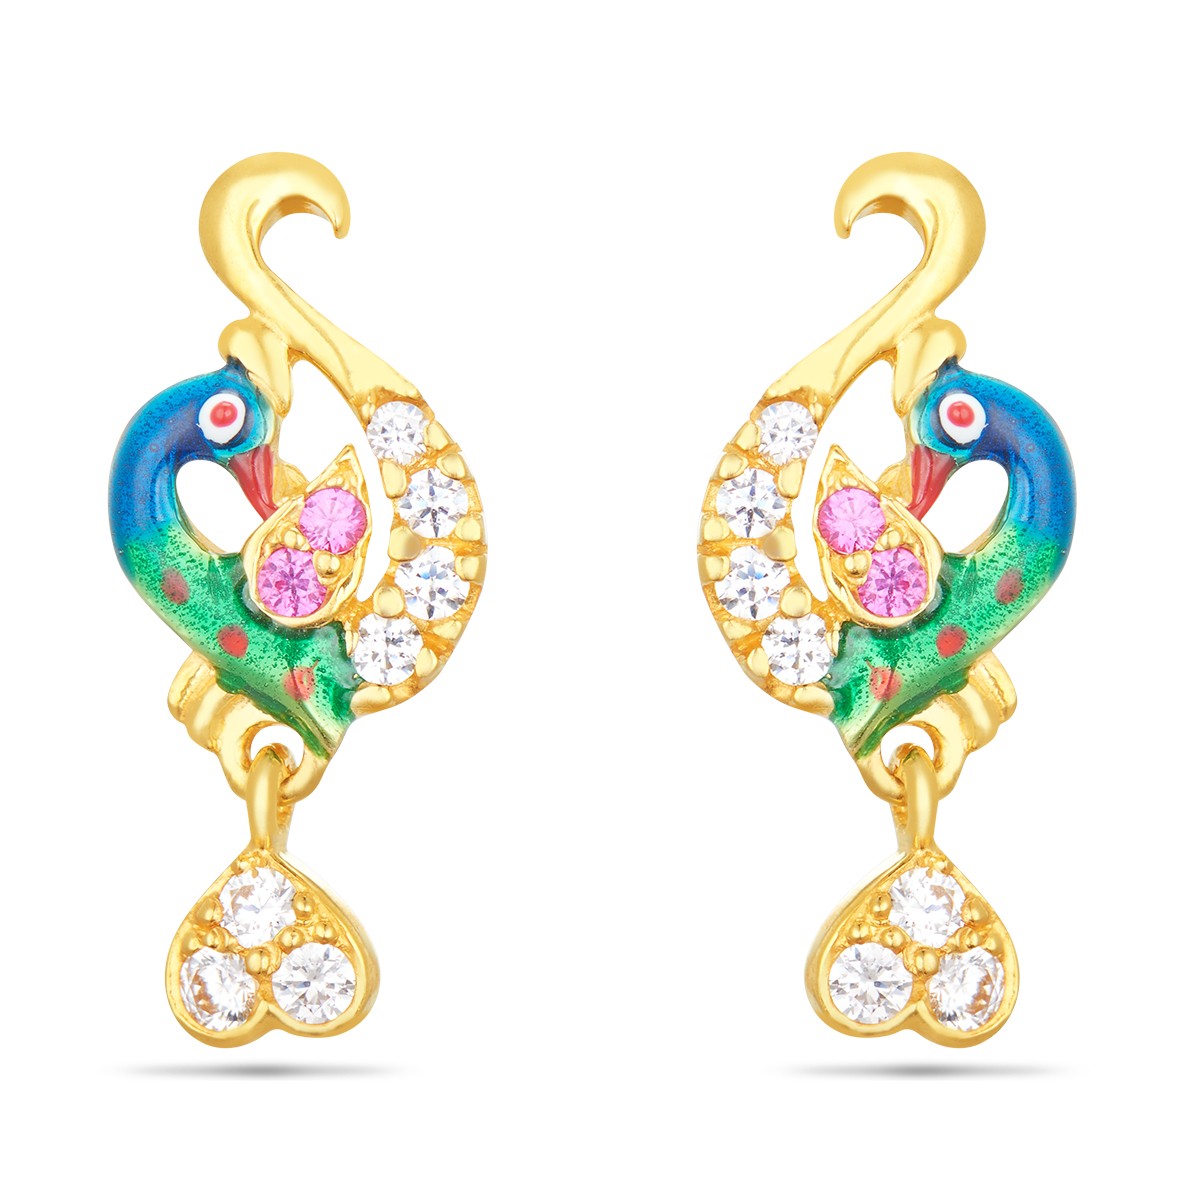 4 gram gold earrings designs